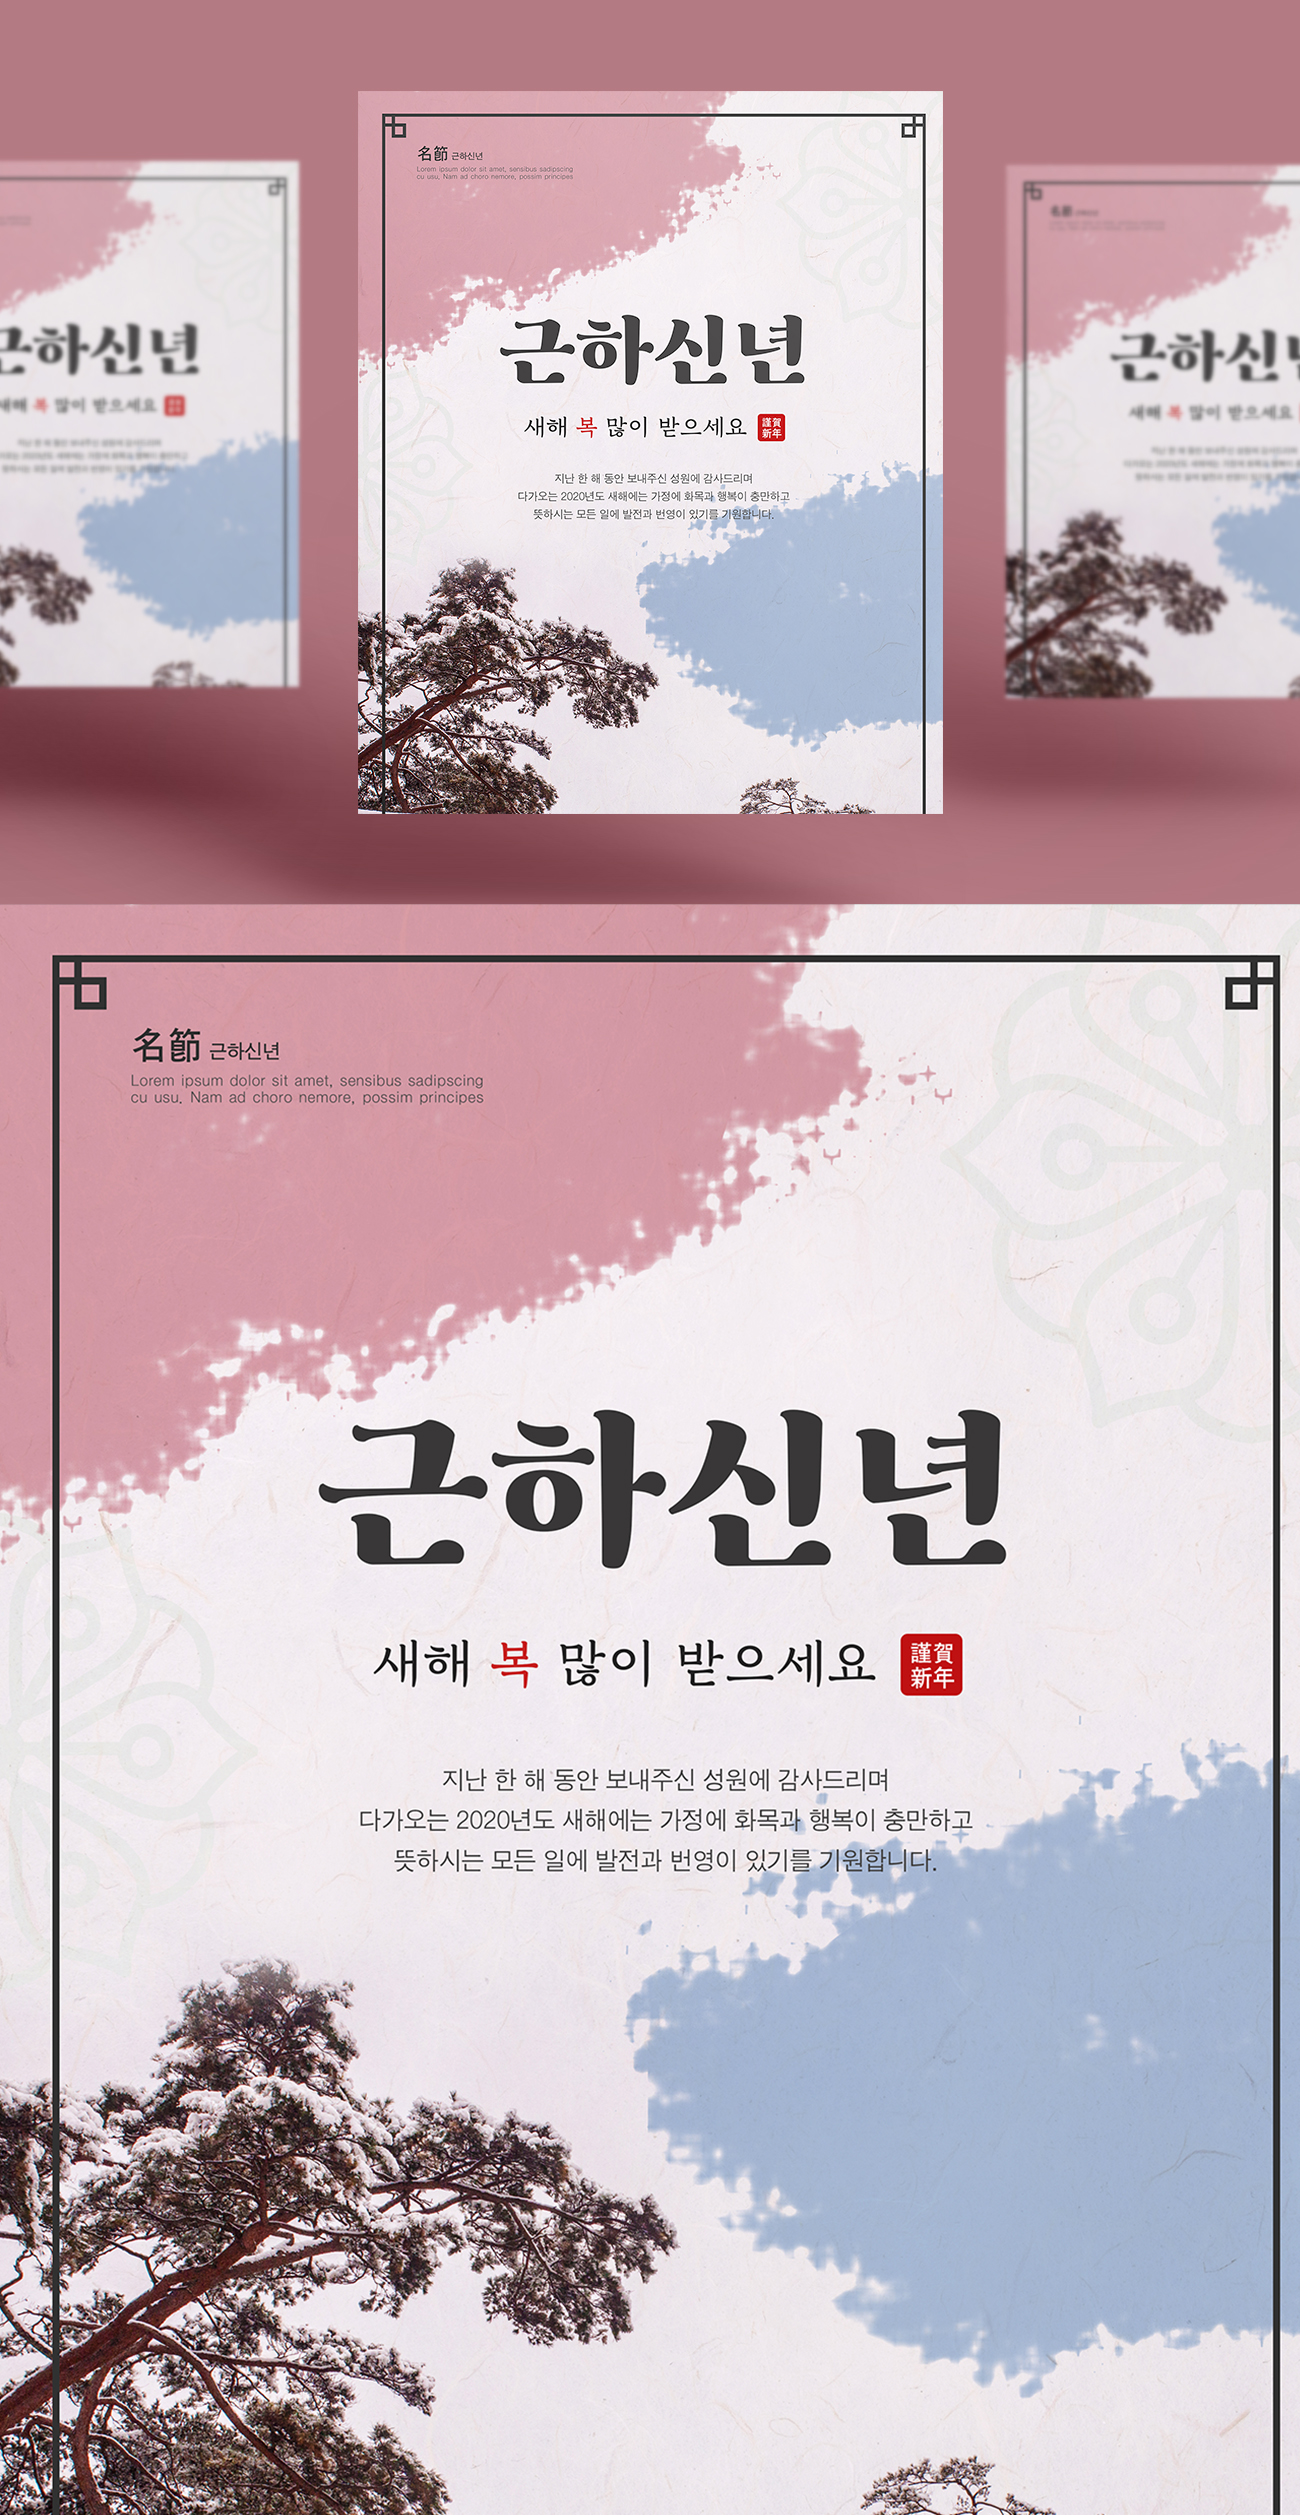 韩式枫树建筑新年贺卡设计模版邀请函请柬